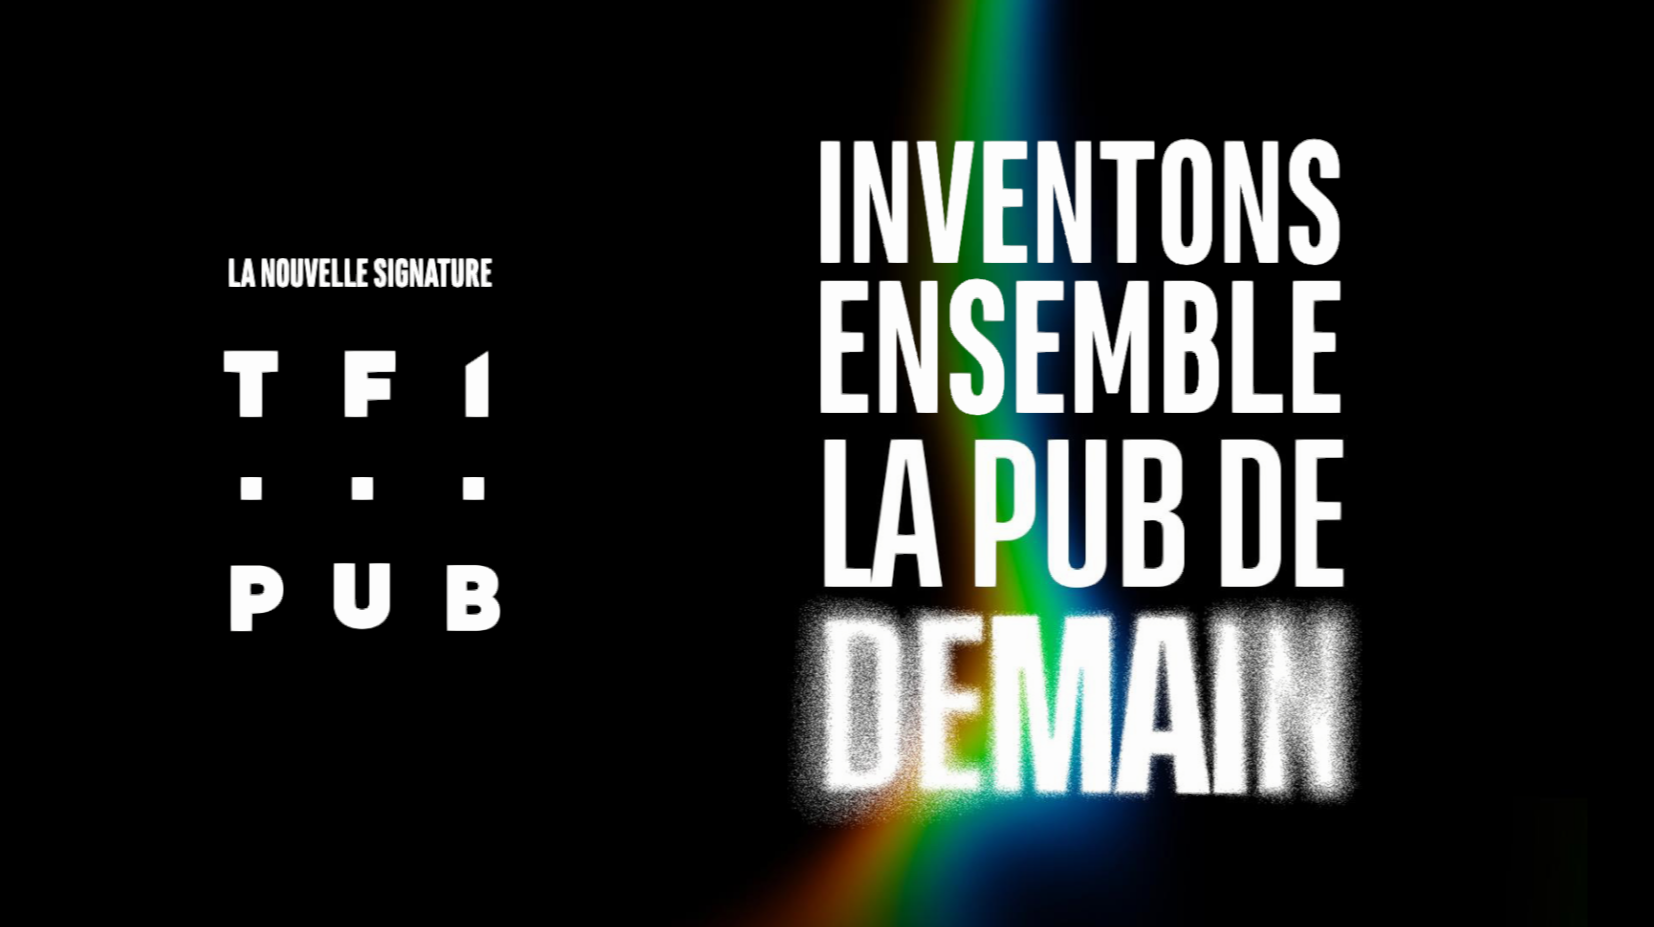 TF1 Pub, inventons ensemble la pub de demain